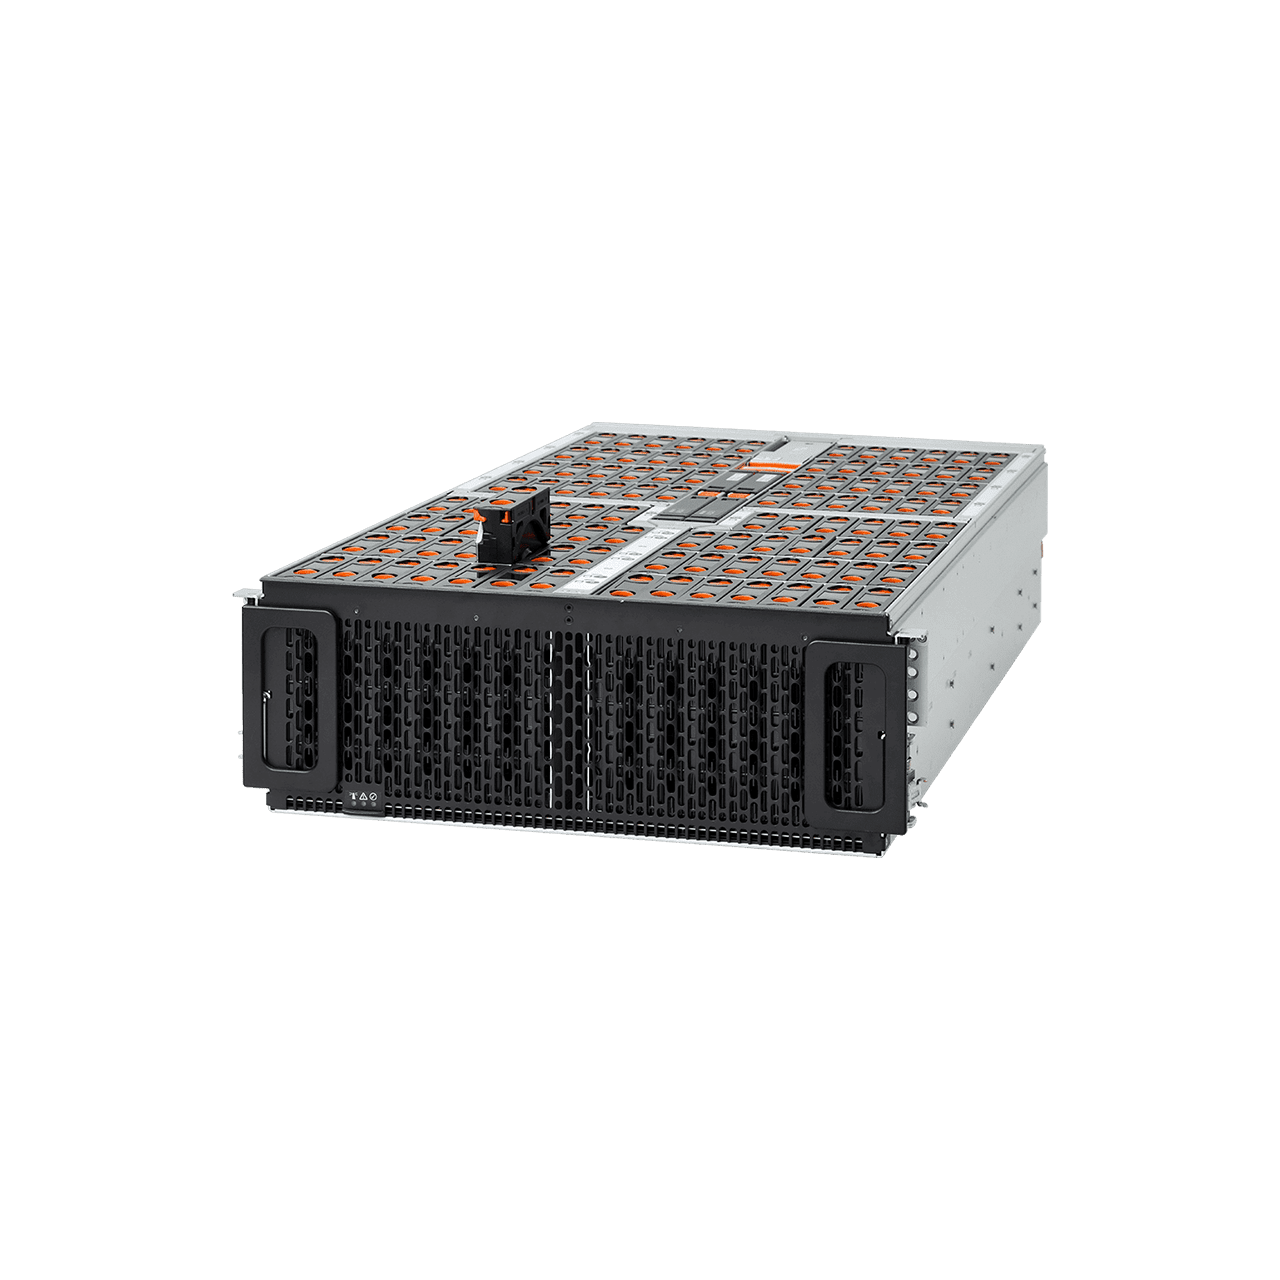 Western Digital Ultrastar Data102 Hybrid Storage Platform SE4U102 | 4U102 102-Bay Data Center JBOD Enclosure | Up to 1.8PB - Front Side View